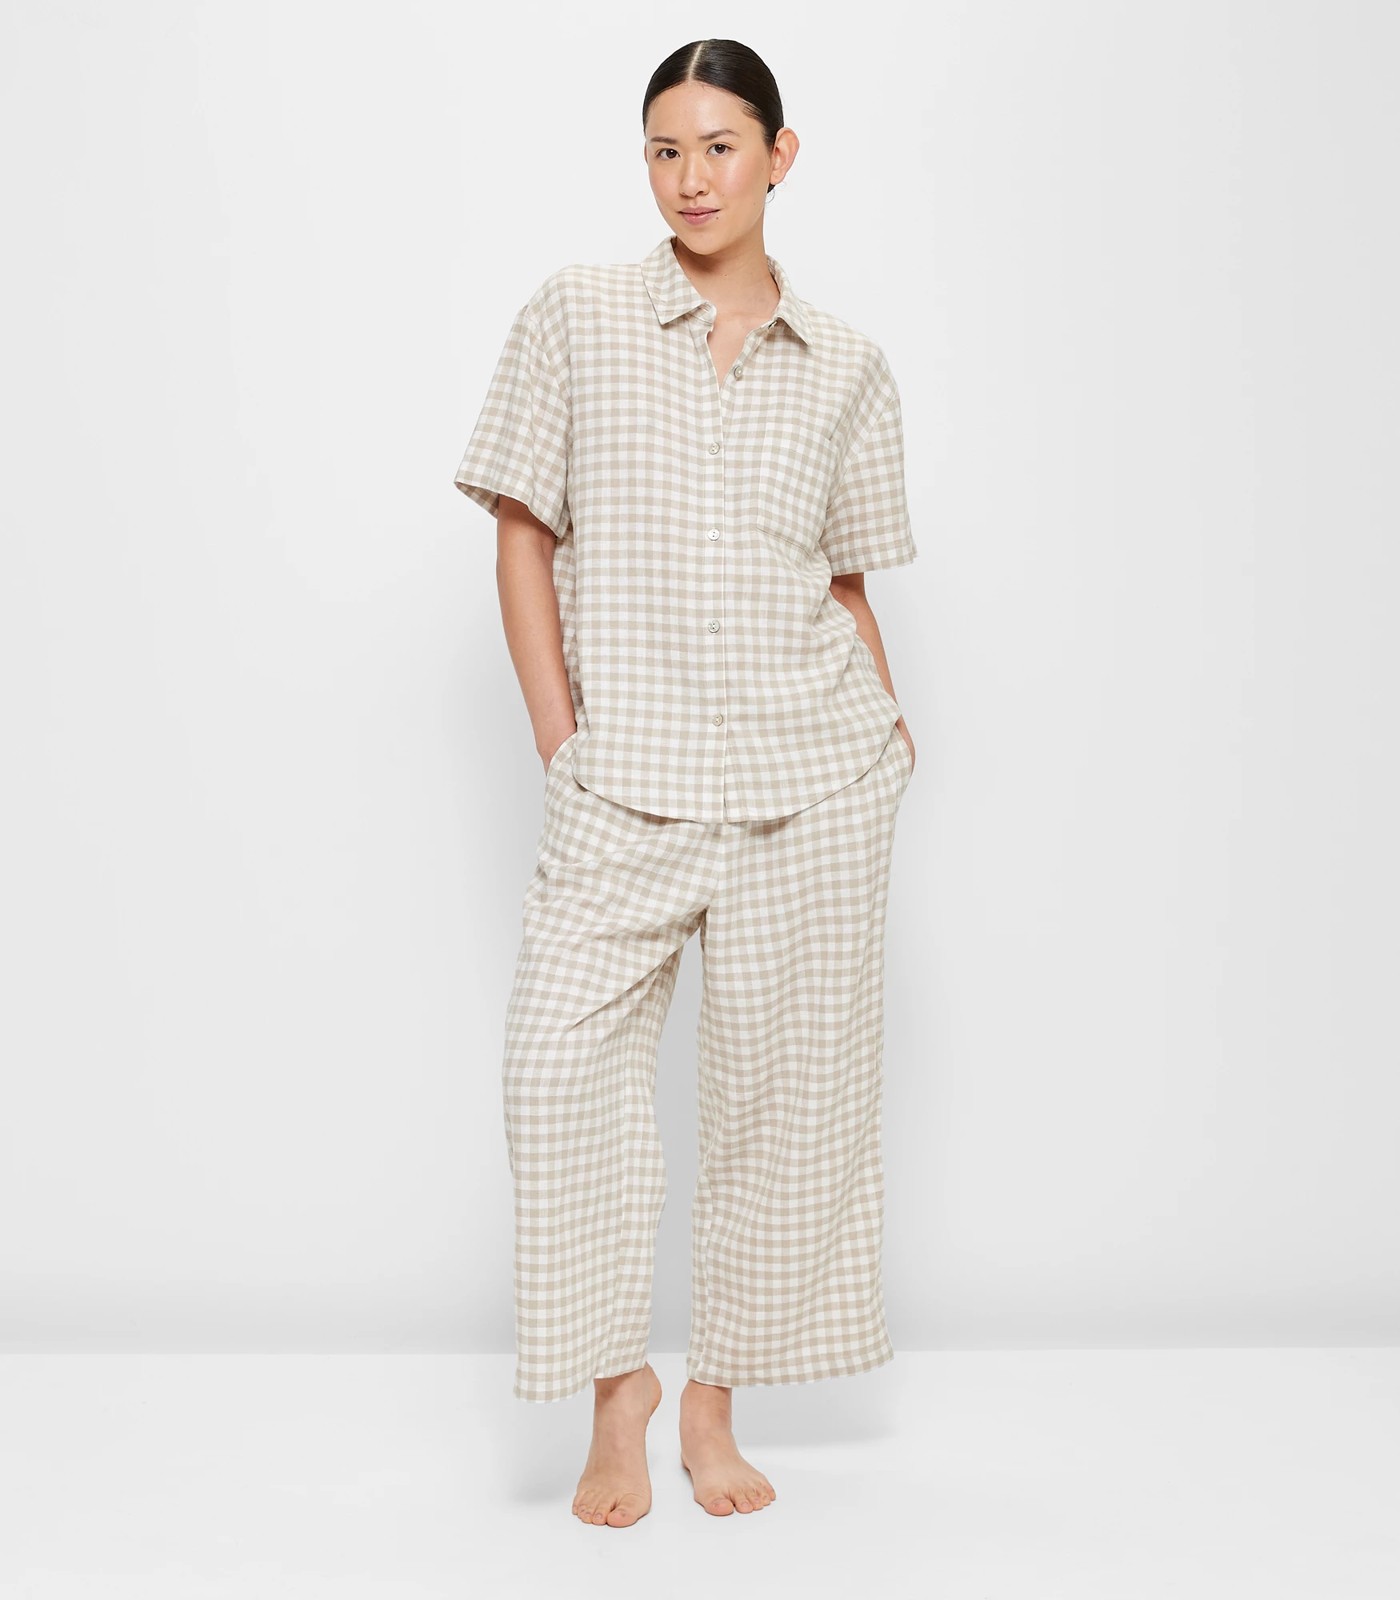 Linen Blend 7/8 Pant and Shirt Sleep Pyjama Set